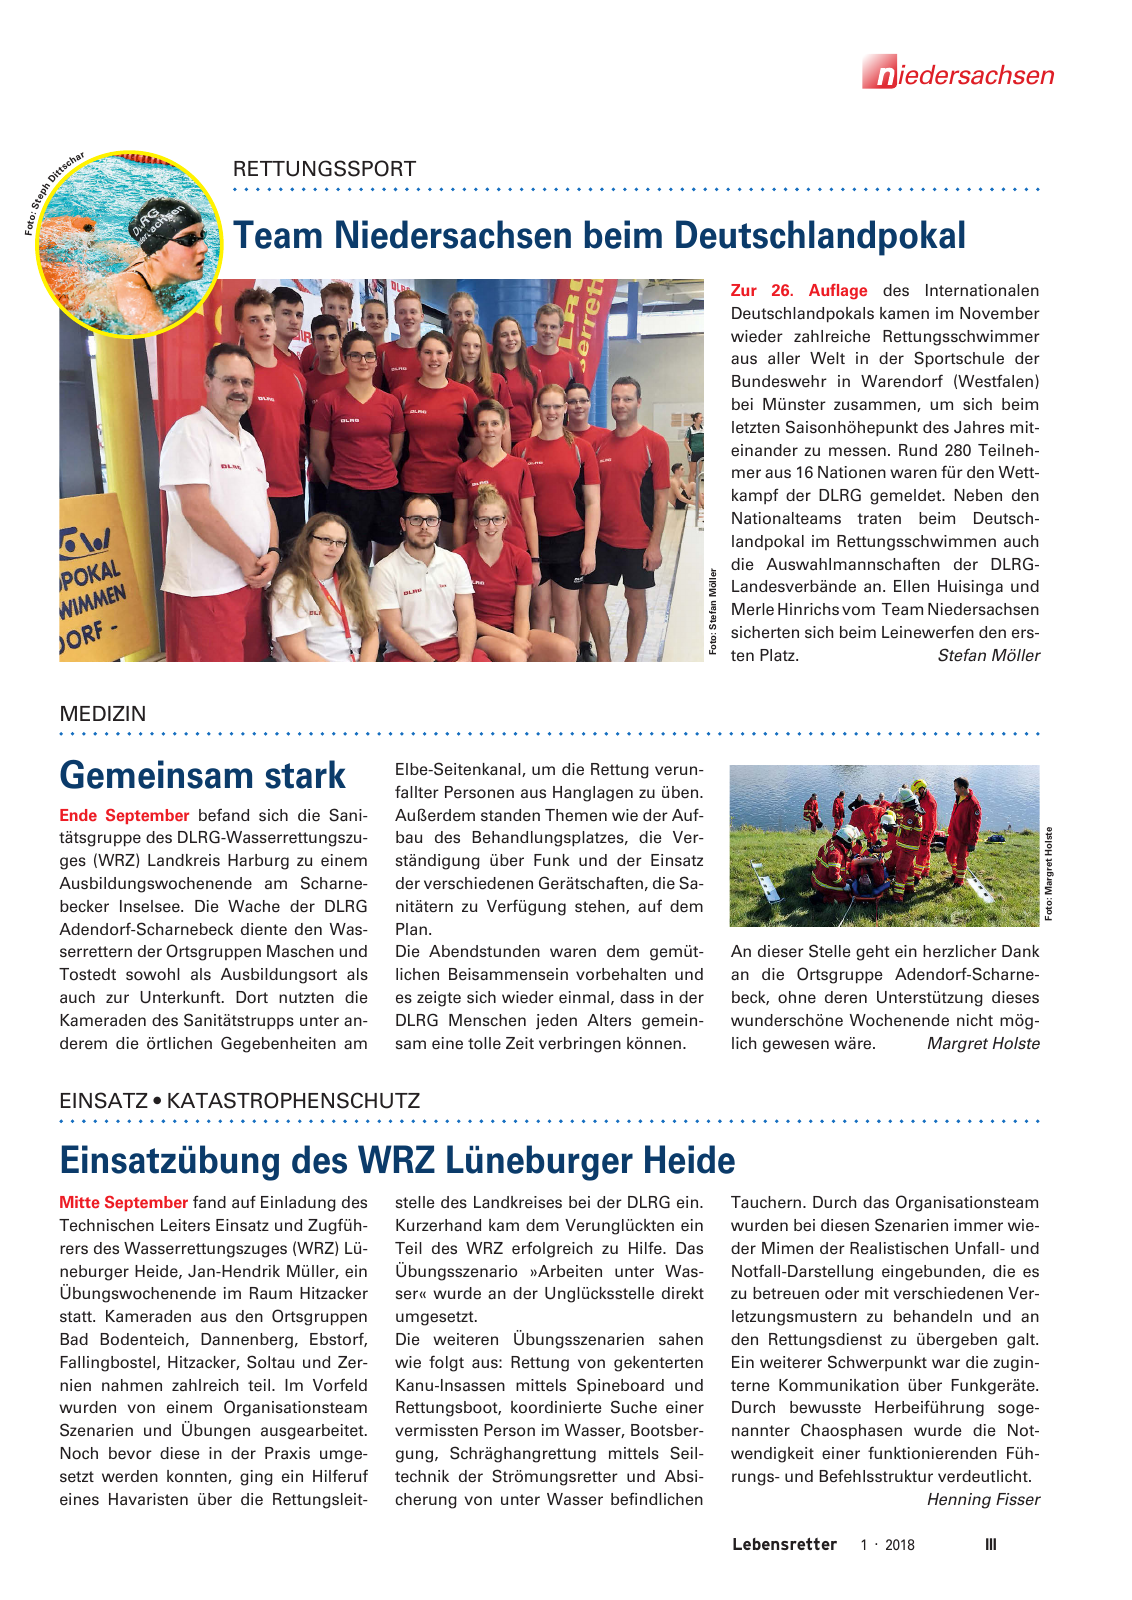 Vorschau Lebensretter 1/2018 - Regionalausgabe Niedersachsen Seite 5